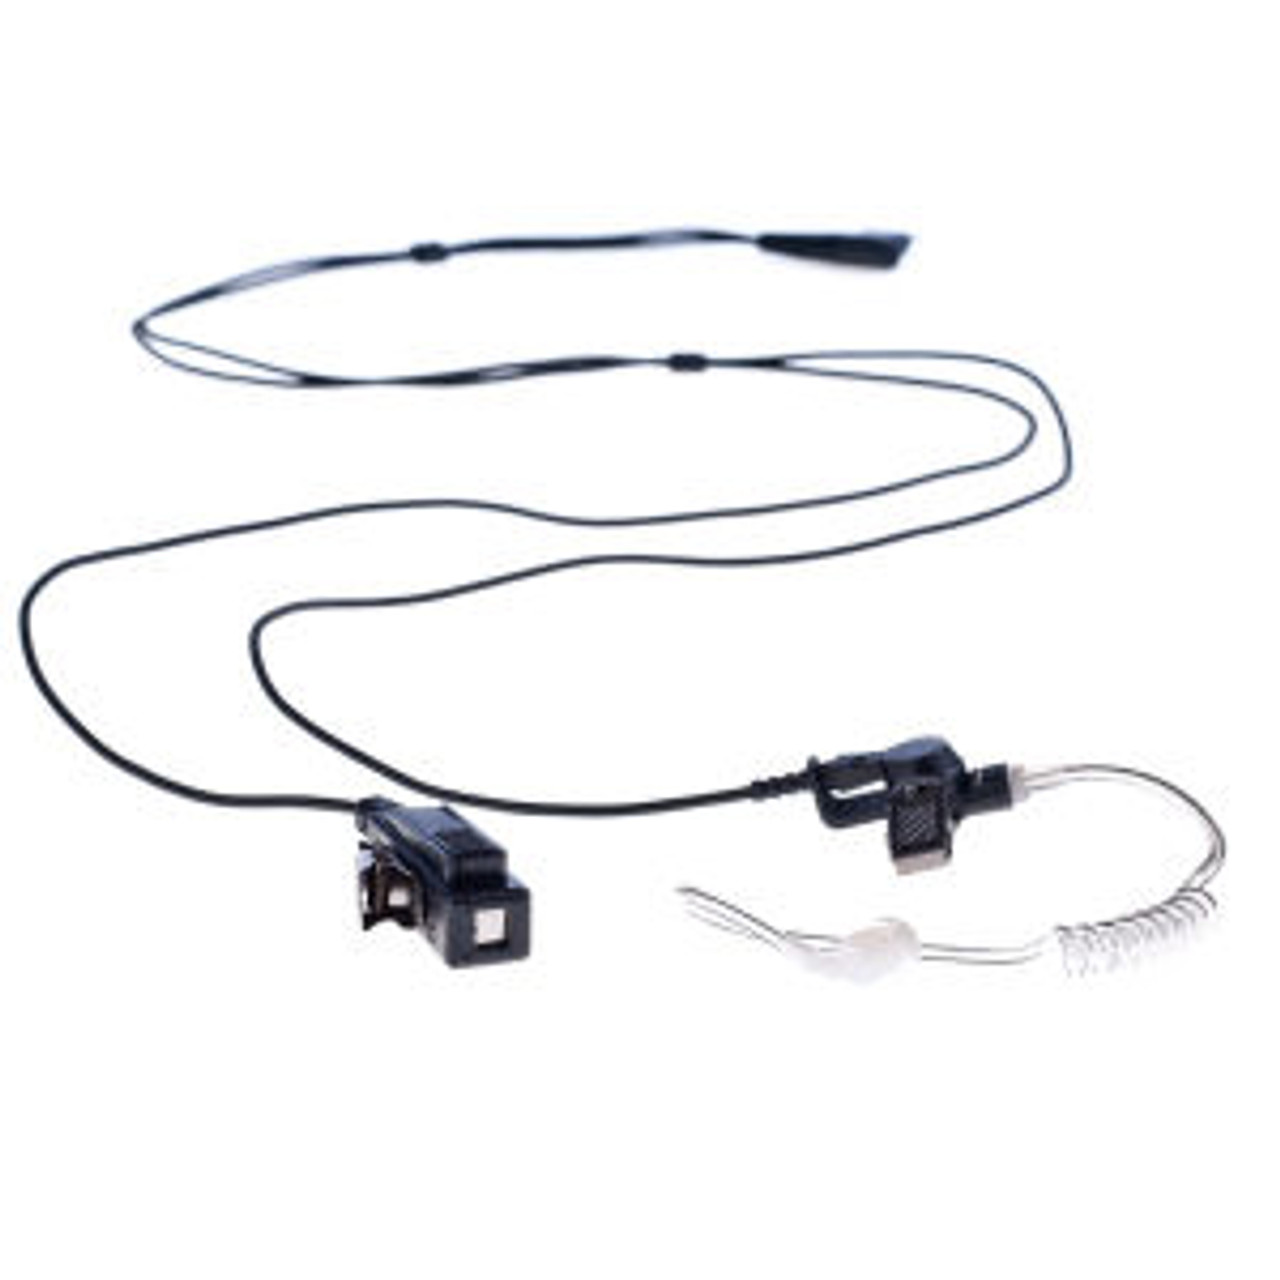 Harris P7150 2-Wire Surveillance Kit